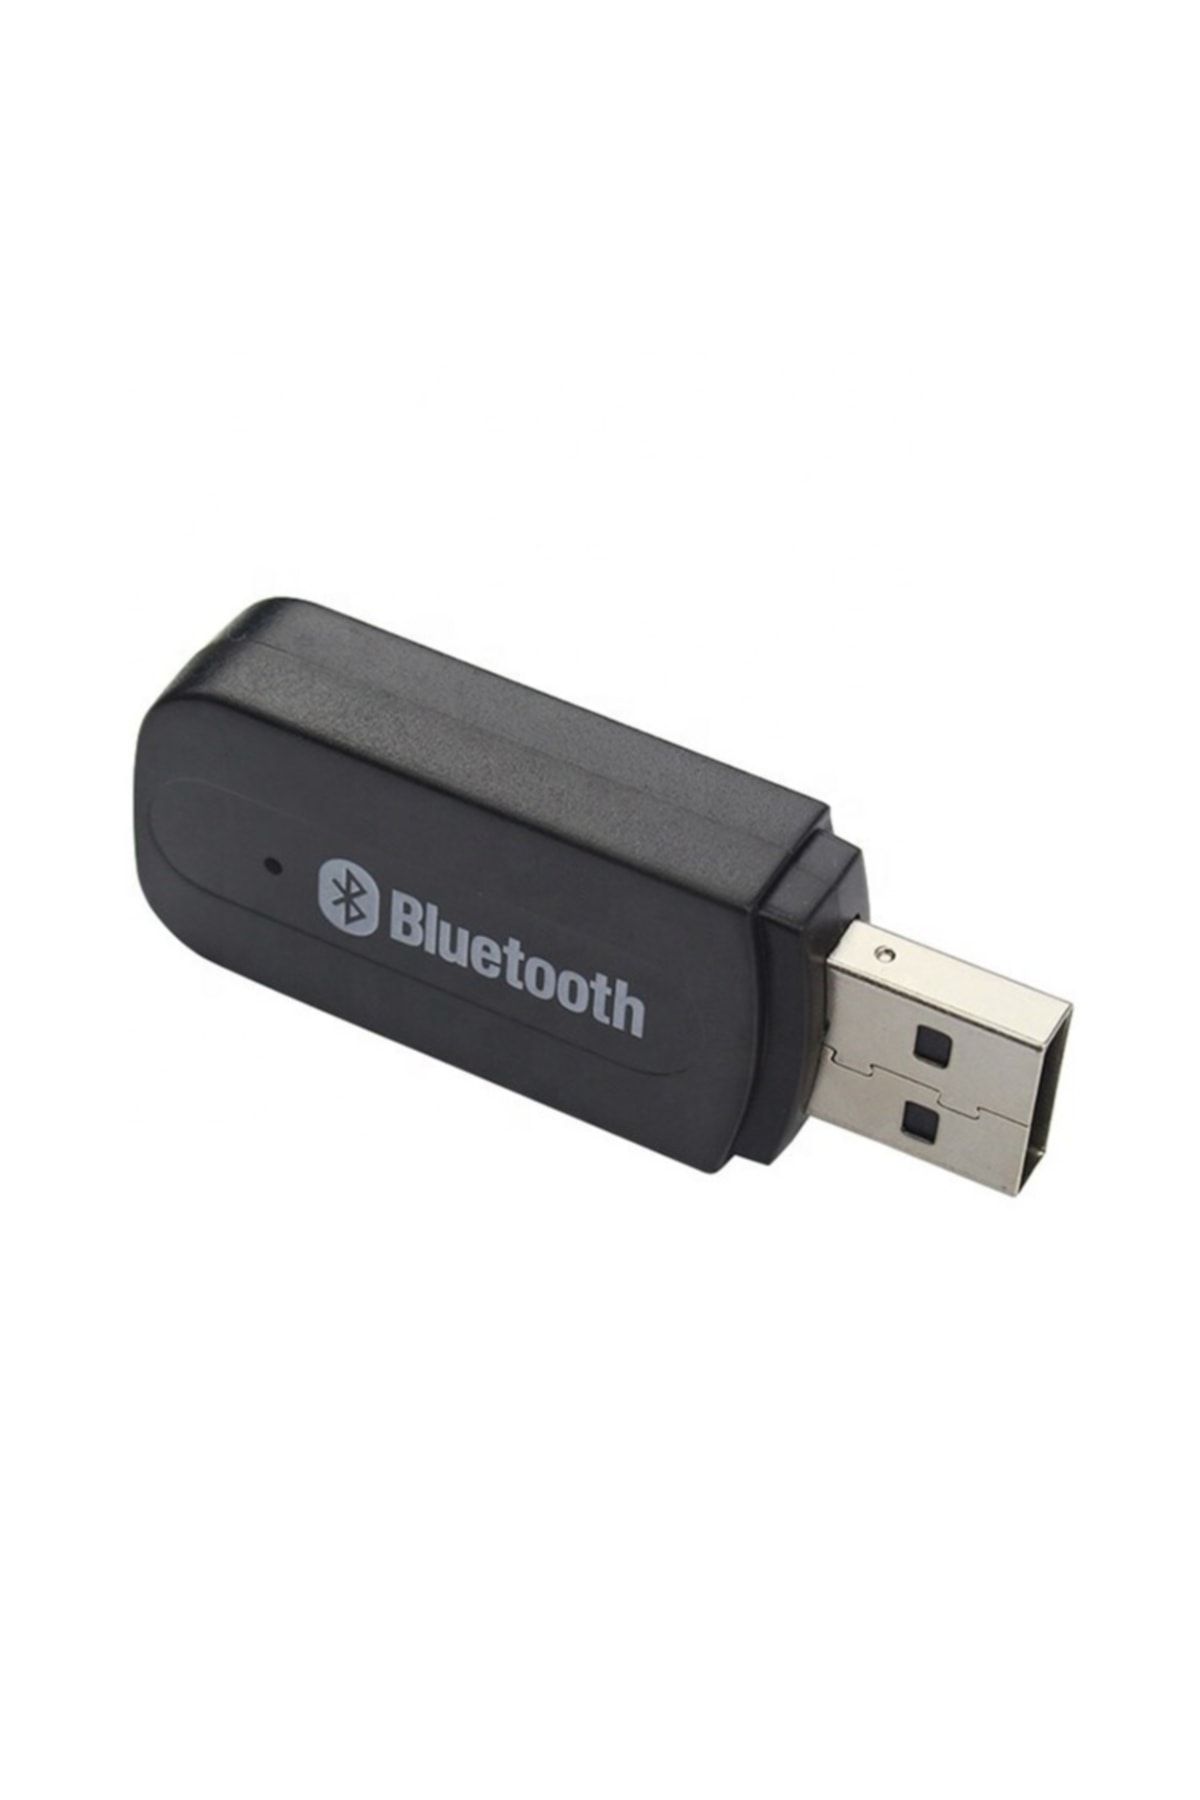 Concord B10 Bluetooth Dongle Usb/aux 3.5mm Kablosuz Stereo Ses Müzik Alıcısı/adaptör Dongle Uyumlu